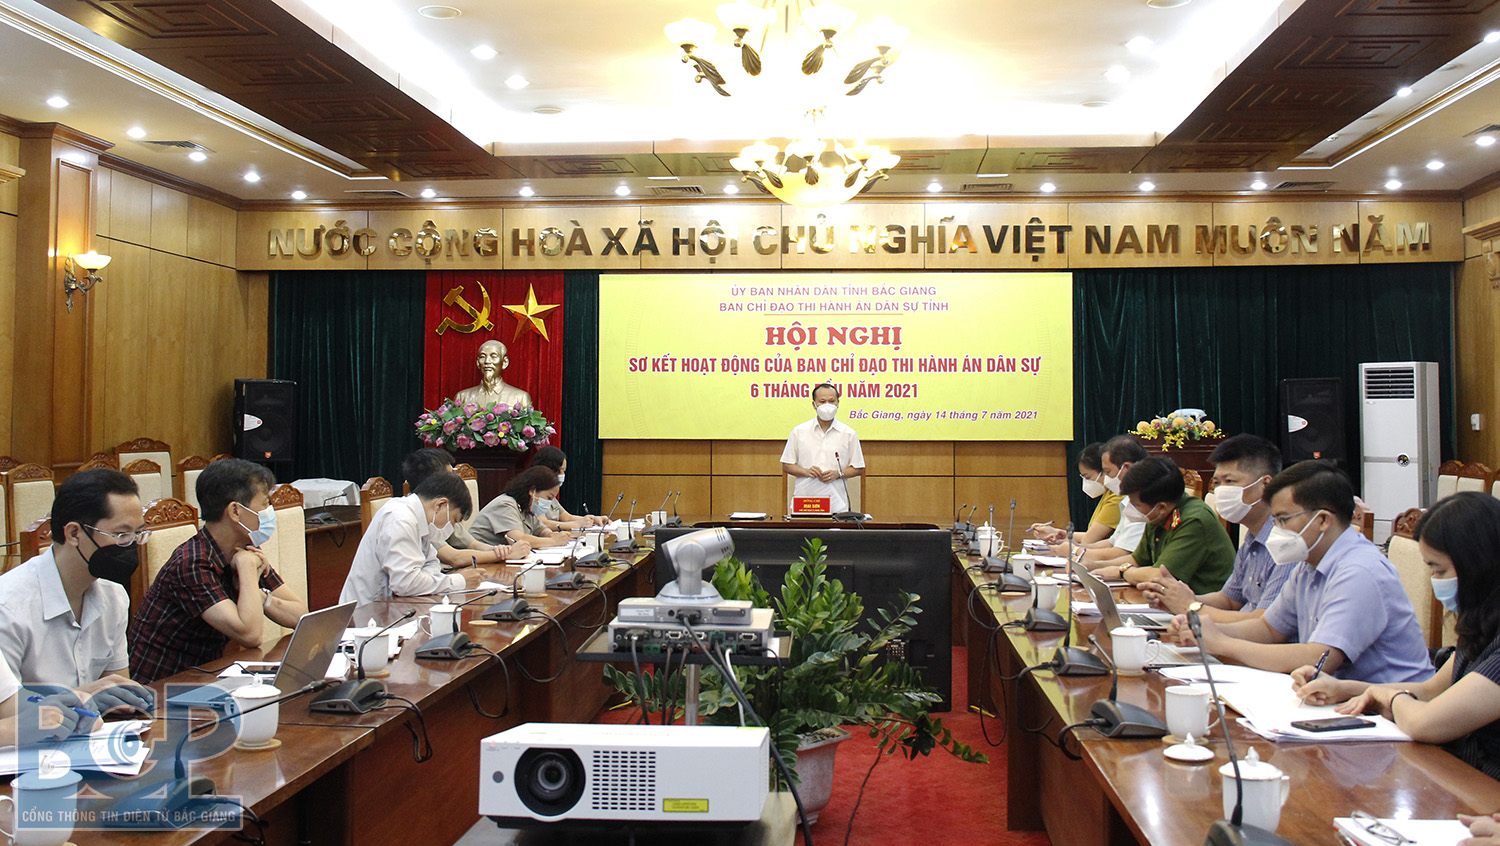 Bắc Giang: Sơ kết hoạt động của Ban Chỉ đạo Thi hành án dân sự 6 tháng đầu năm 2021